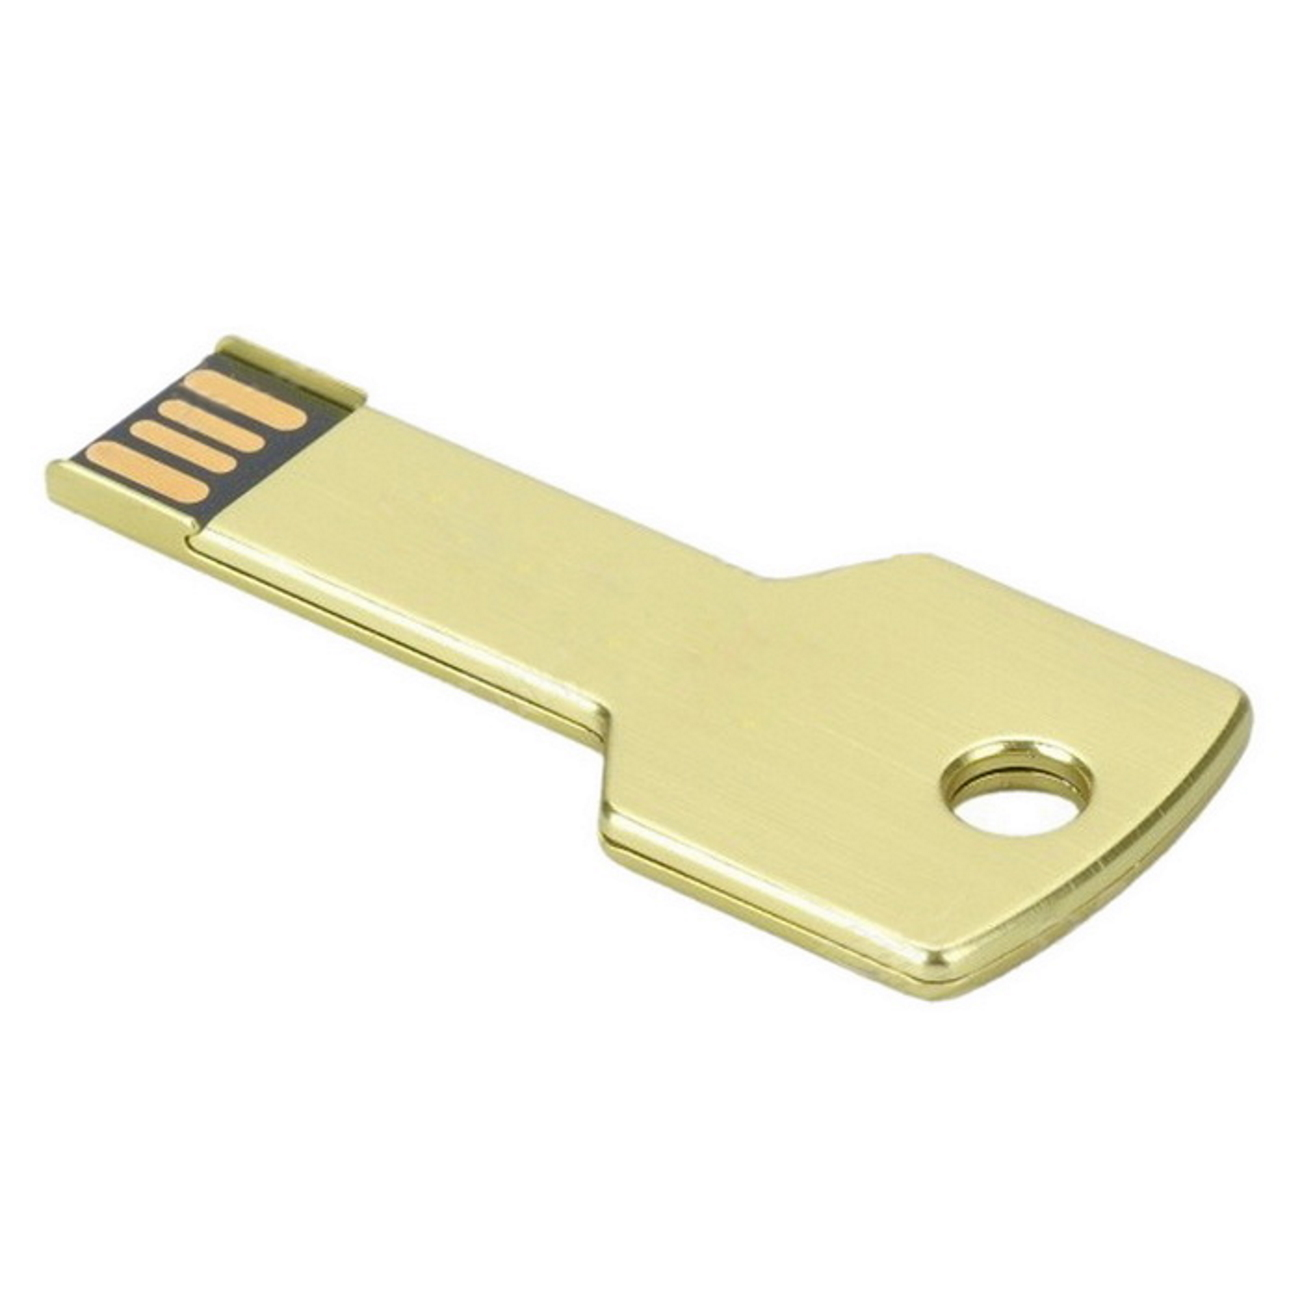 GERMANY (Gold, USB Key 2 USB-Stick GB) 2GB Gold